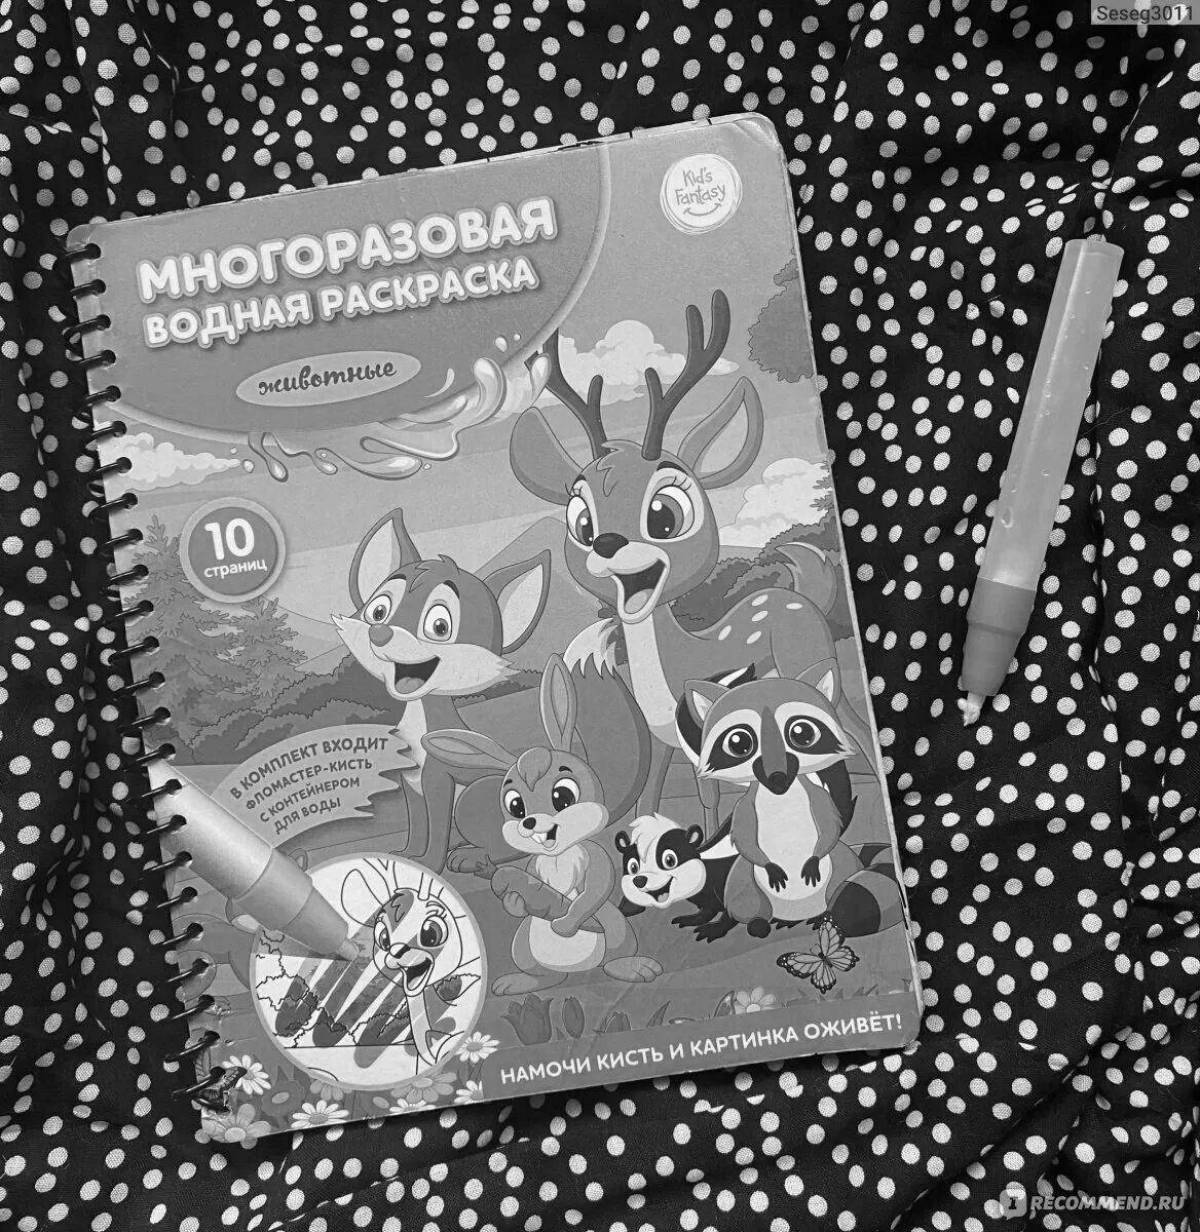 Adorable reusable water coloring book